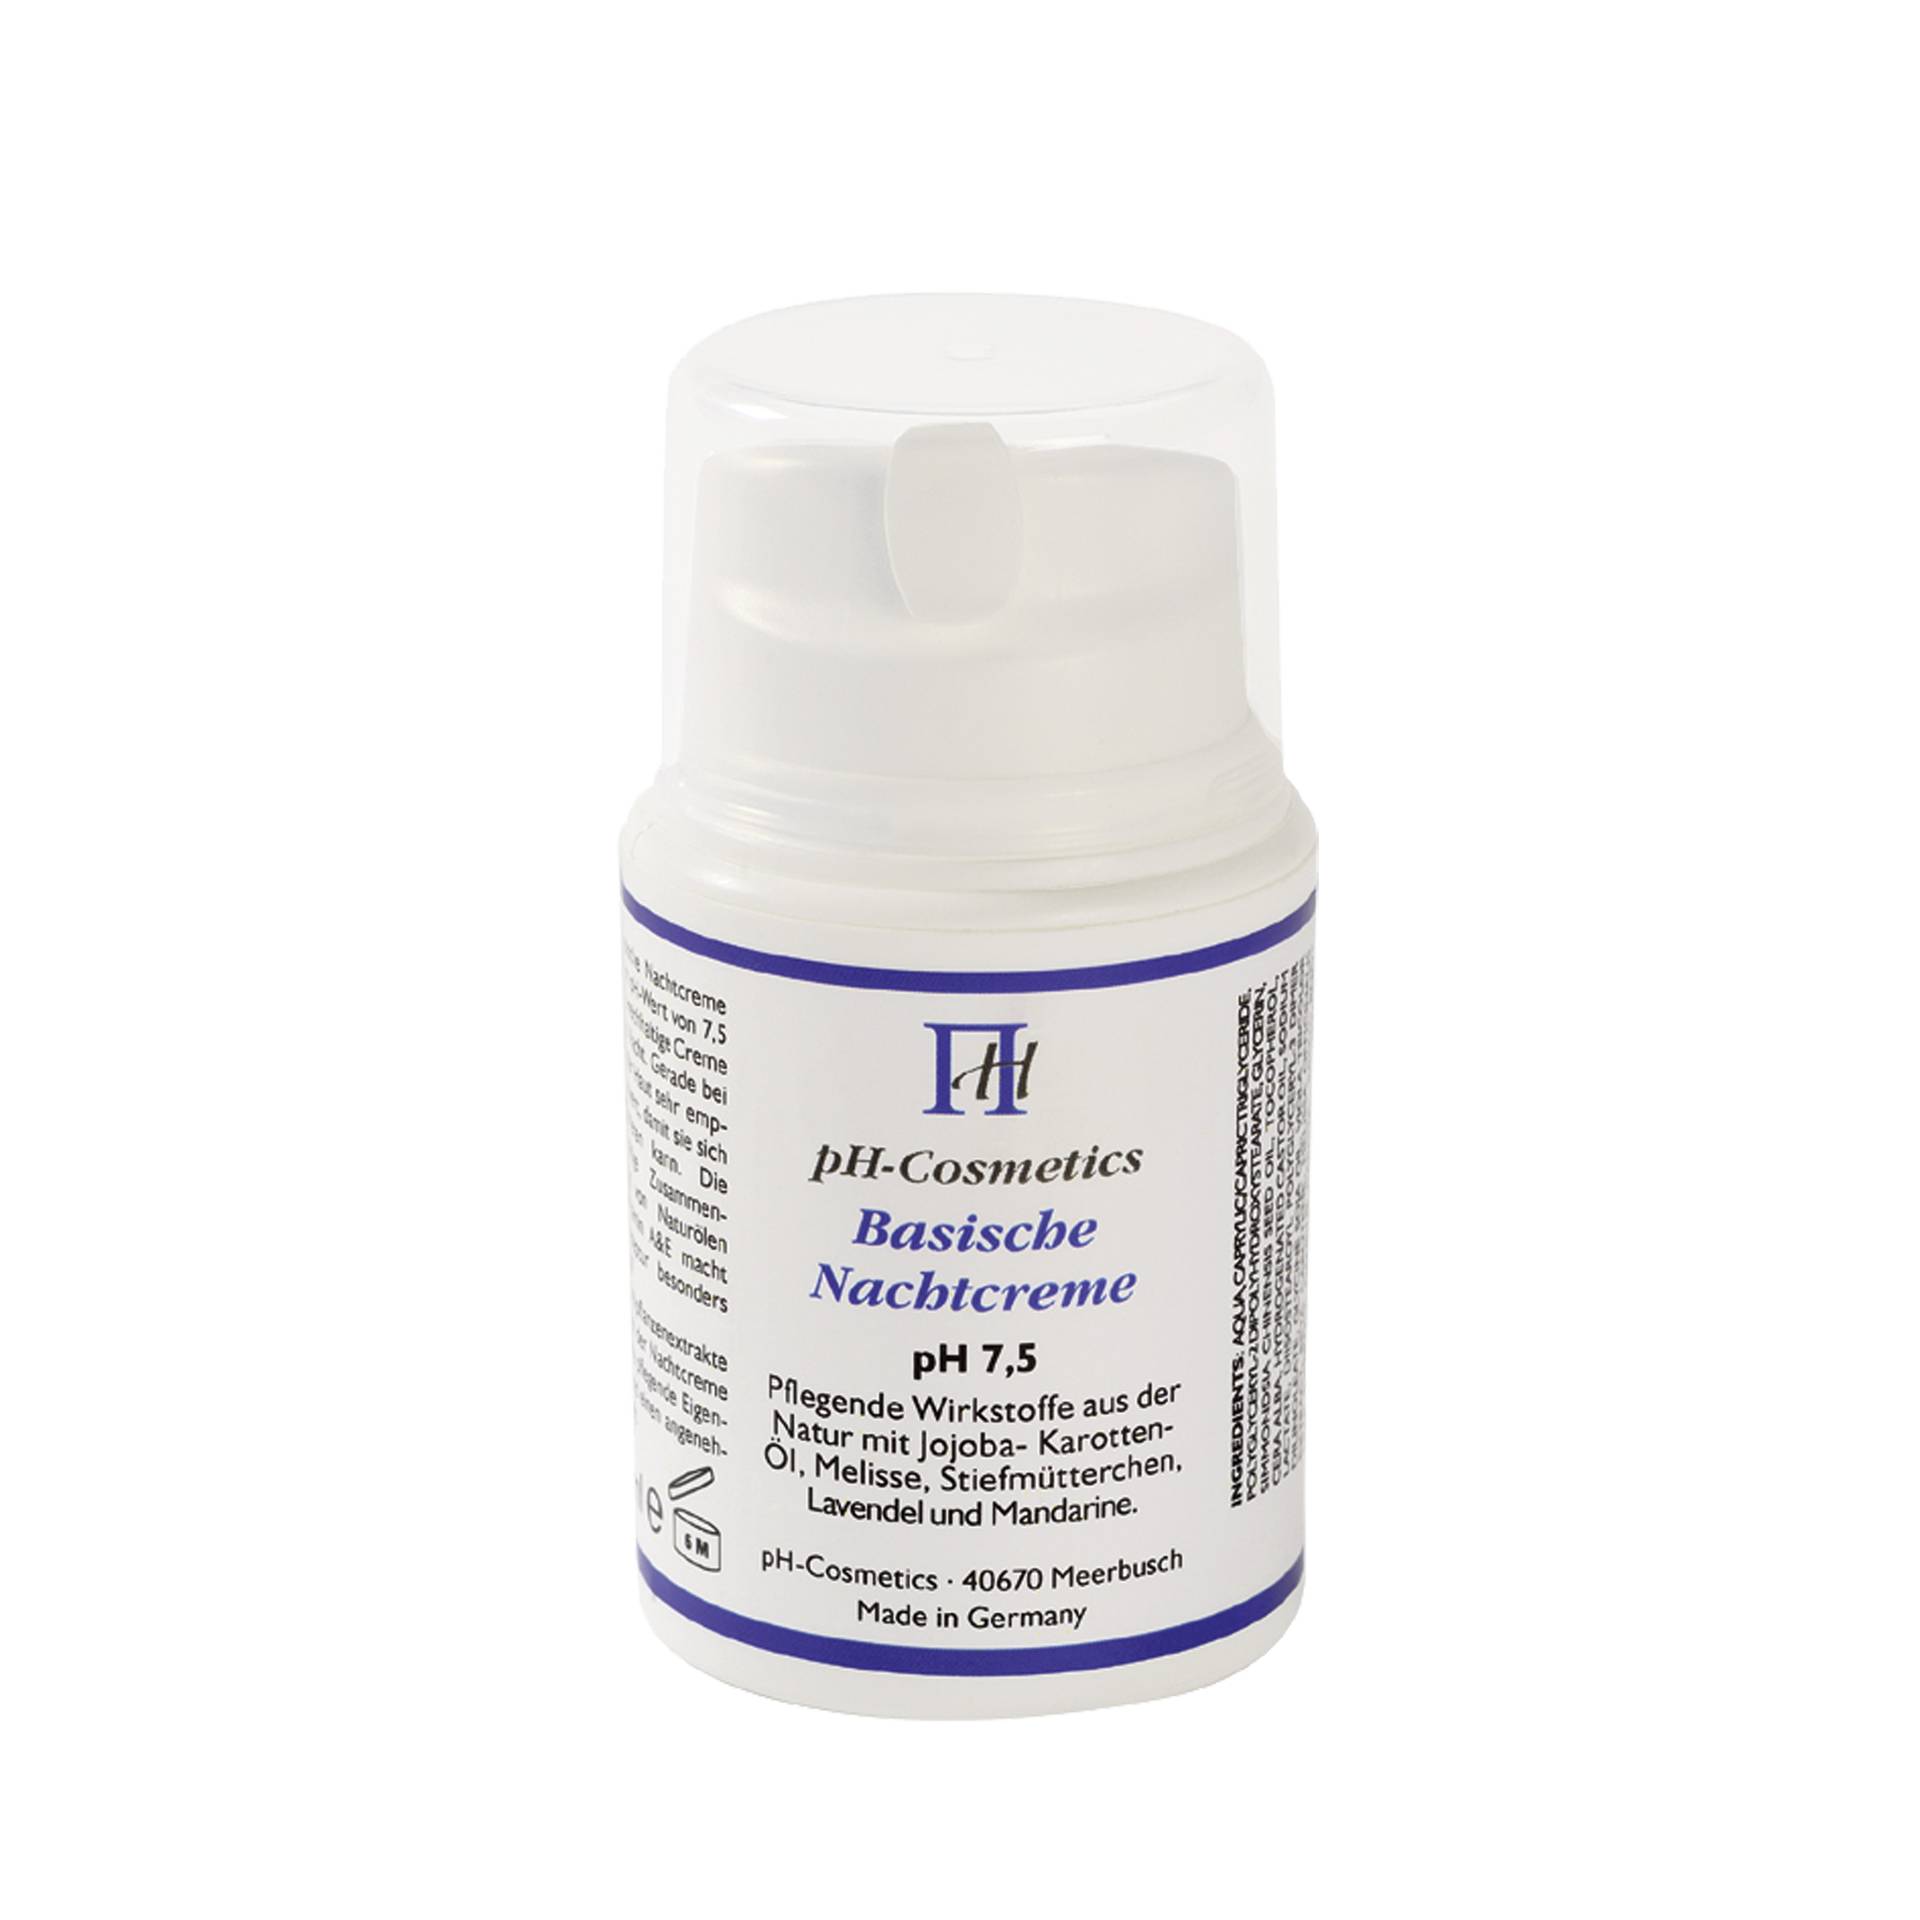 Basische Nachtcreme pH 7.5 50 ml - Bringt die Haut über Nacht ins Gleichgewicht - vegan - ph Cosmetics von ph Cosmetics